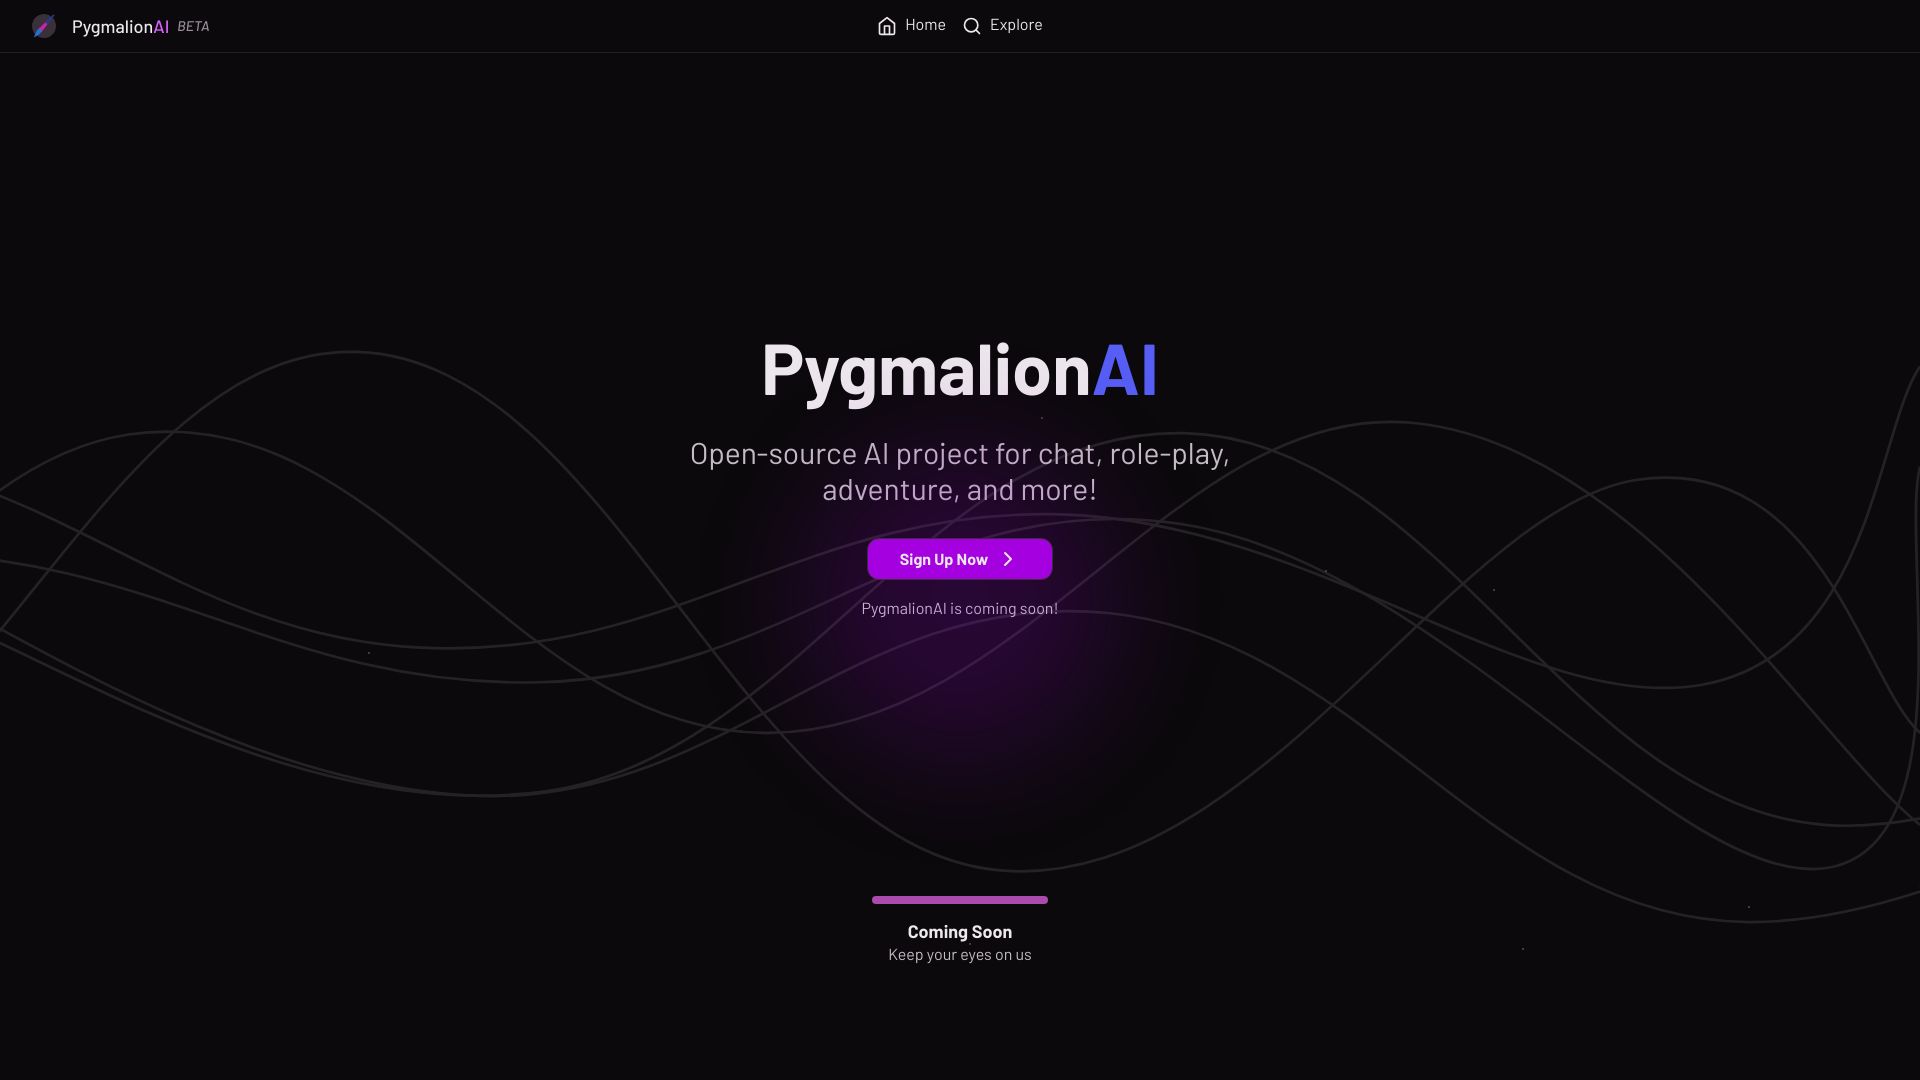 Pygmalion-KI